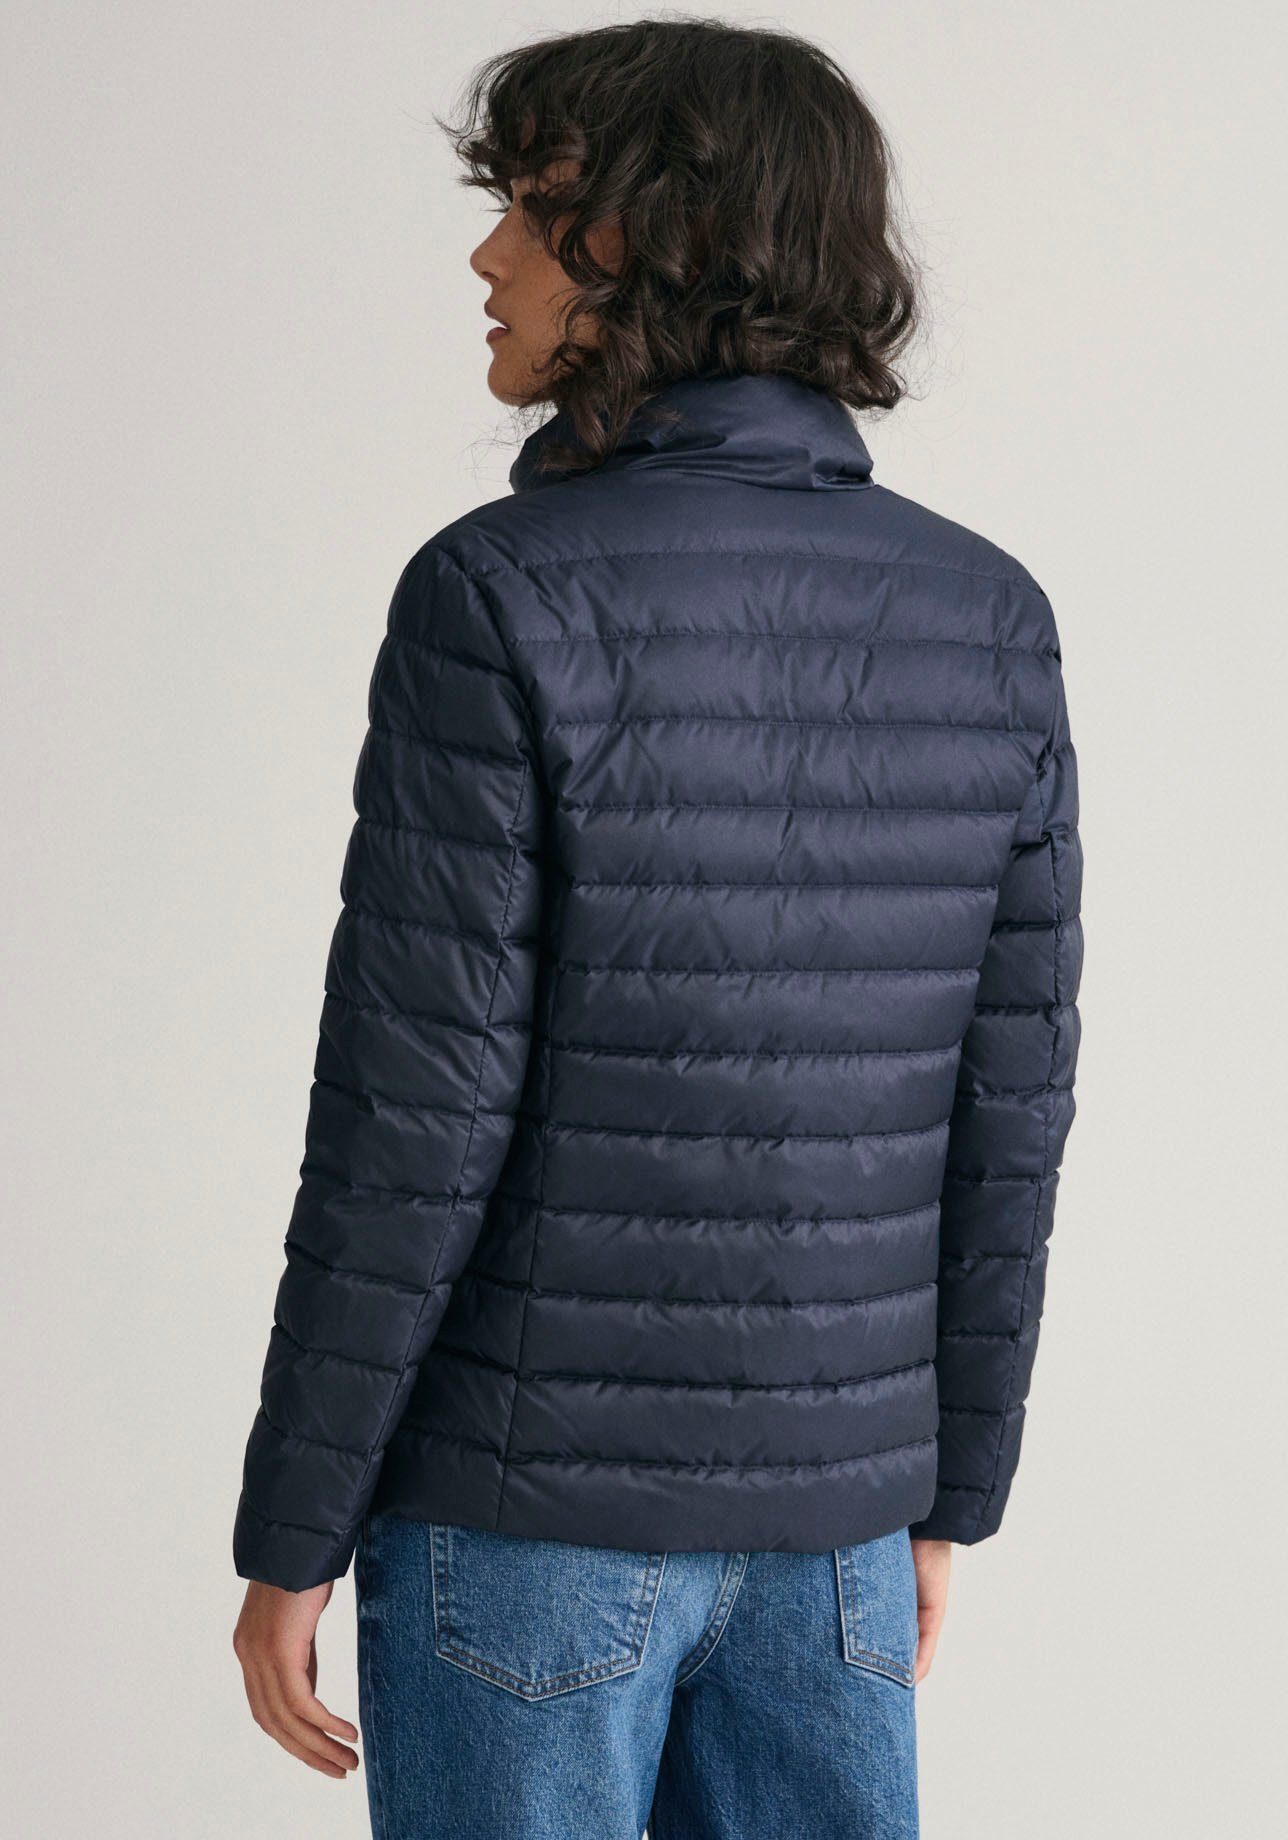 Gant Steppjacke Wasserabweisend, leichte Steppjacke, regenabweisend, Trägt  sich ideal solo über Blusen oder unter einem dickeren Mantel | Jacken